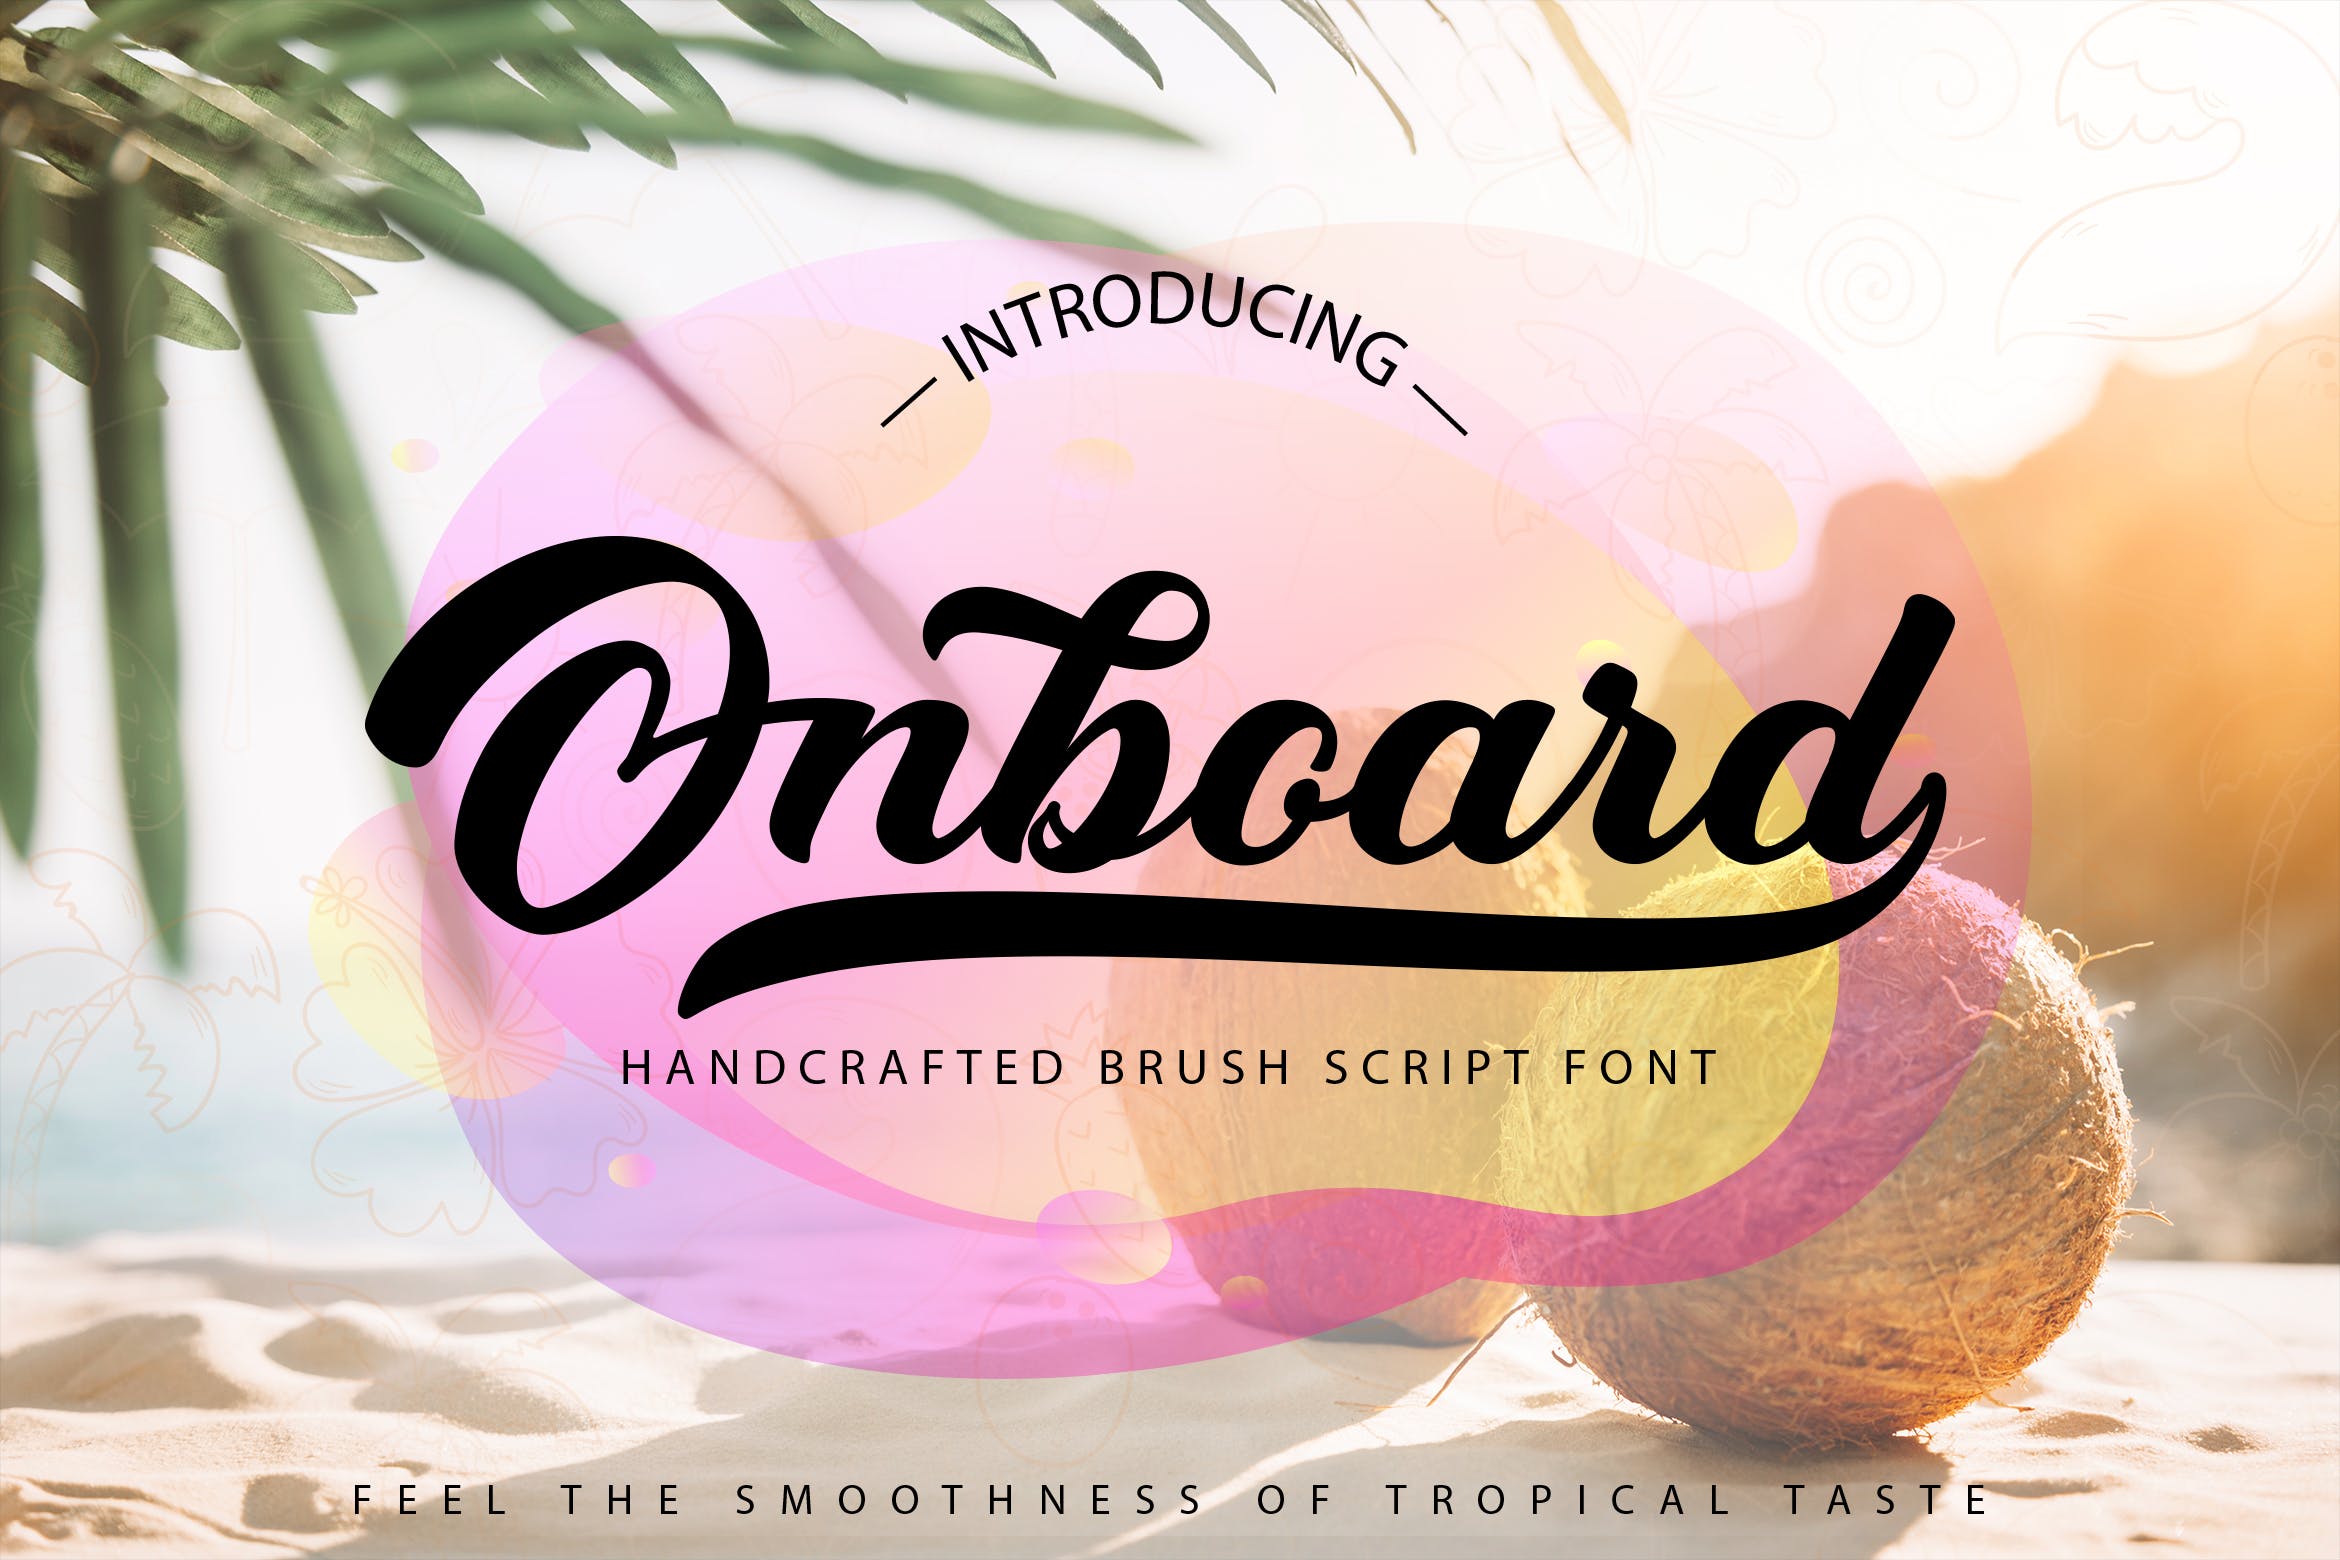 平滑圆润英文笔刷书法字体 Onboard | Smooth Script Font插图